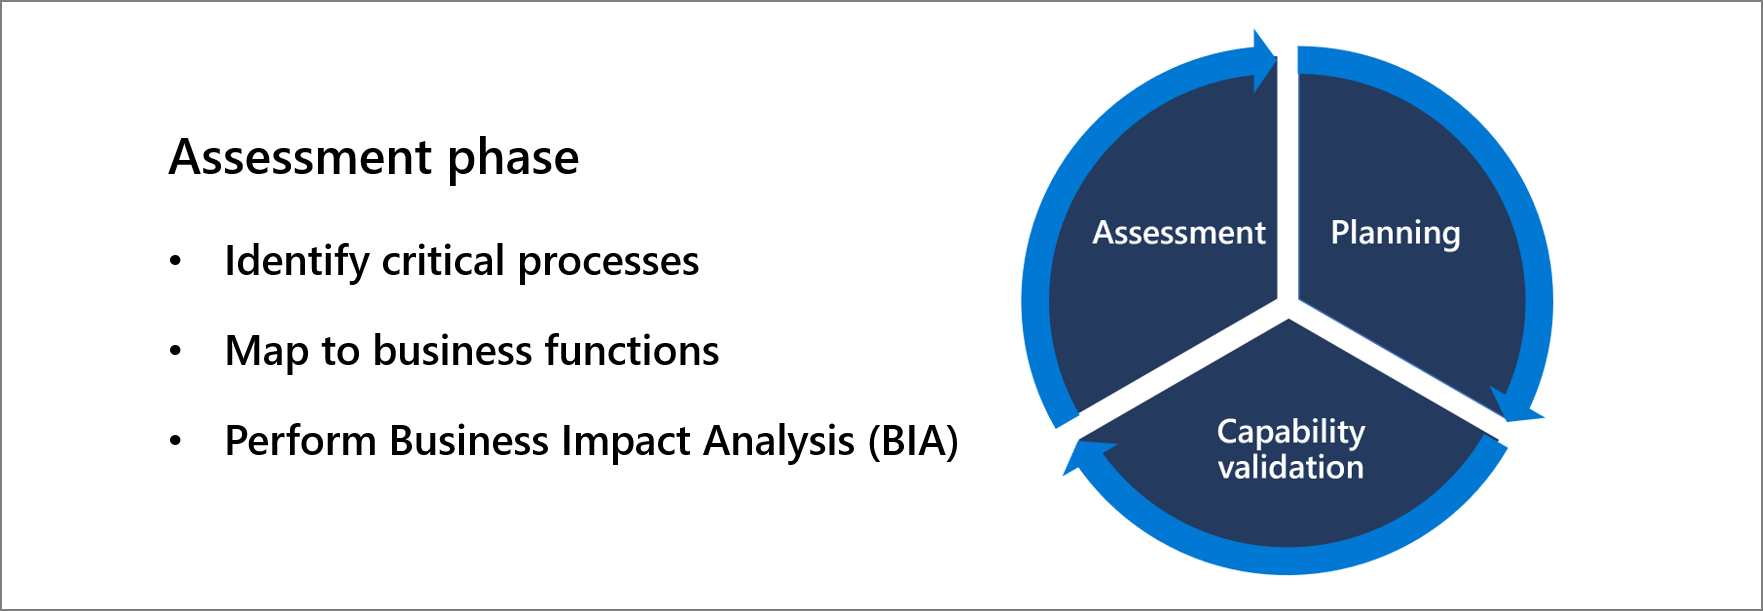 評估階段：- 識別重要流程、- 對應到商務功能、- 執行業務影響分析